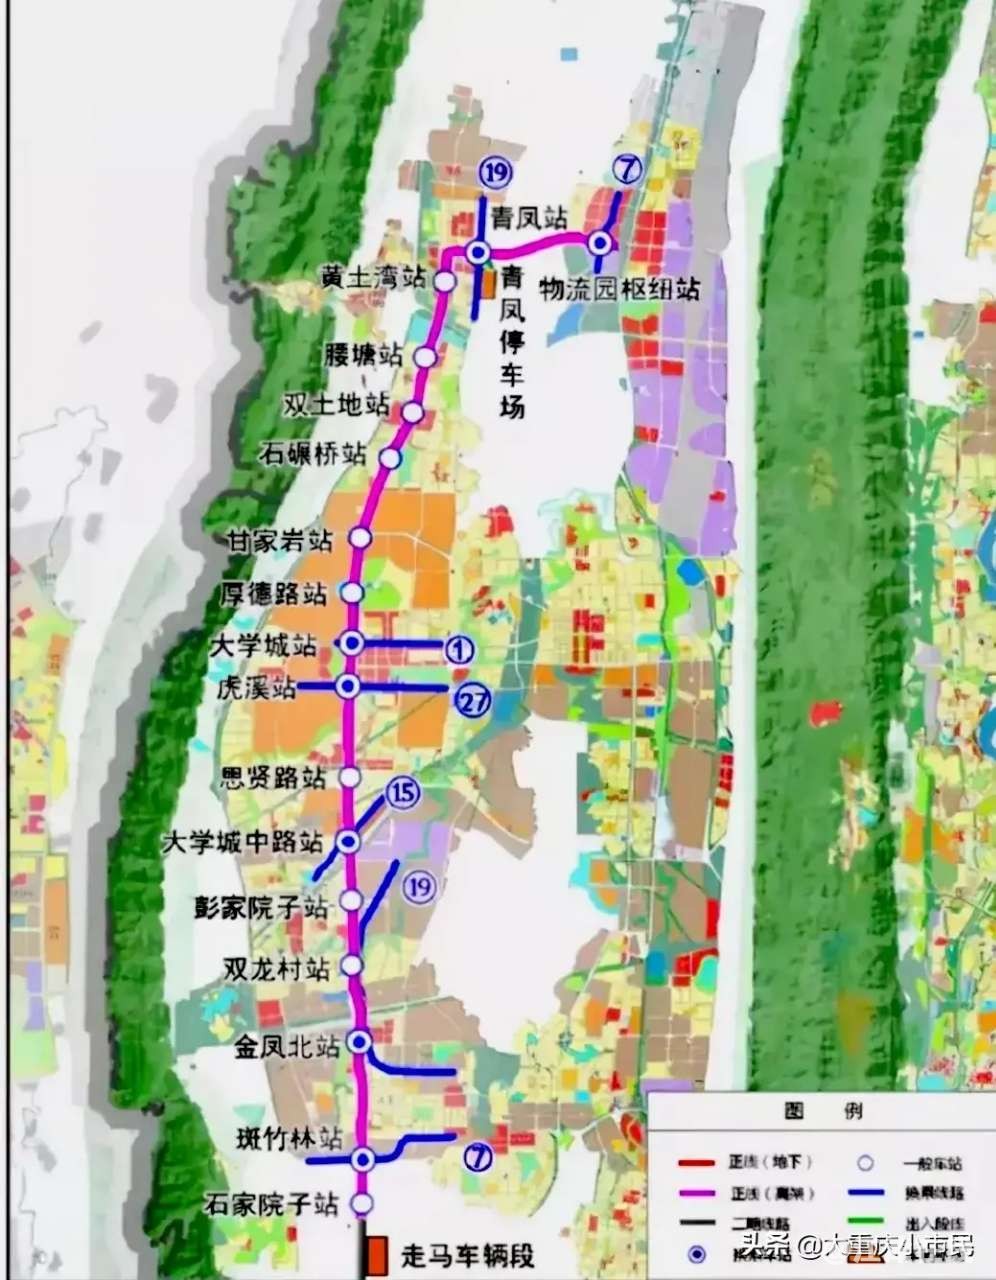 重庆轨道交通17号线一期最新方案公布,延长